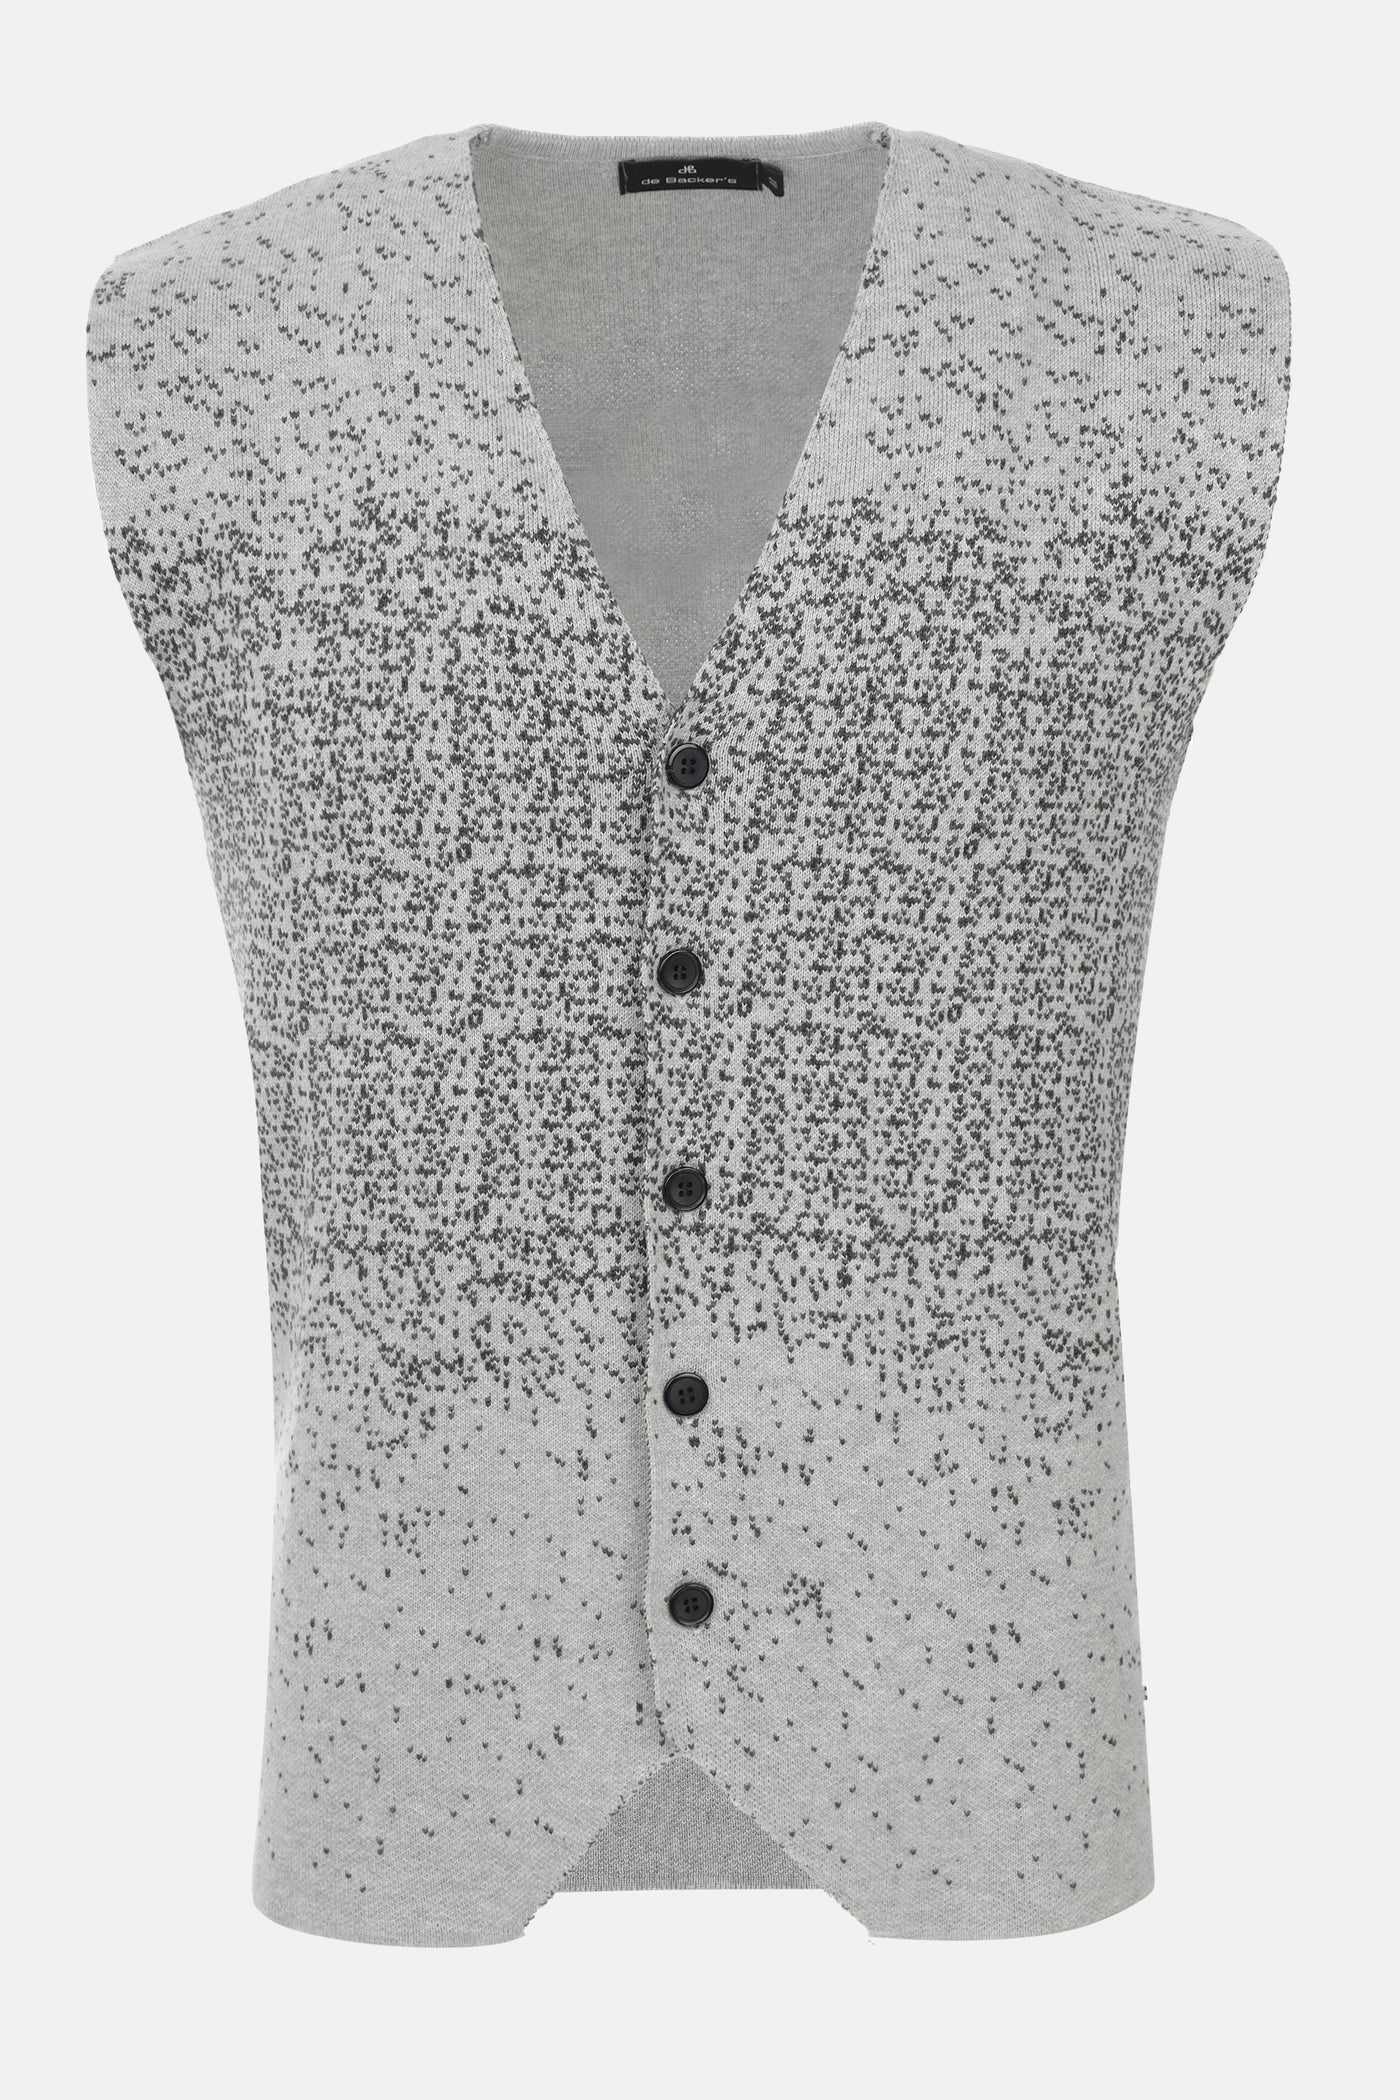 Button up  Jacquard Light Gray Knitwear Vest